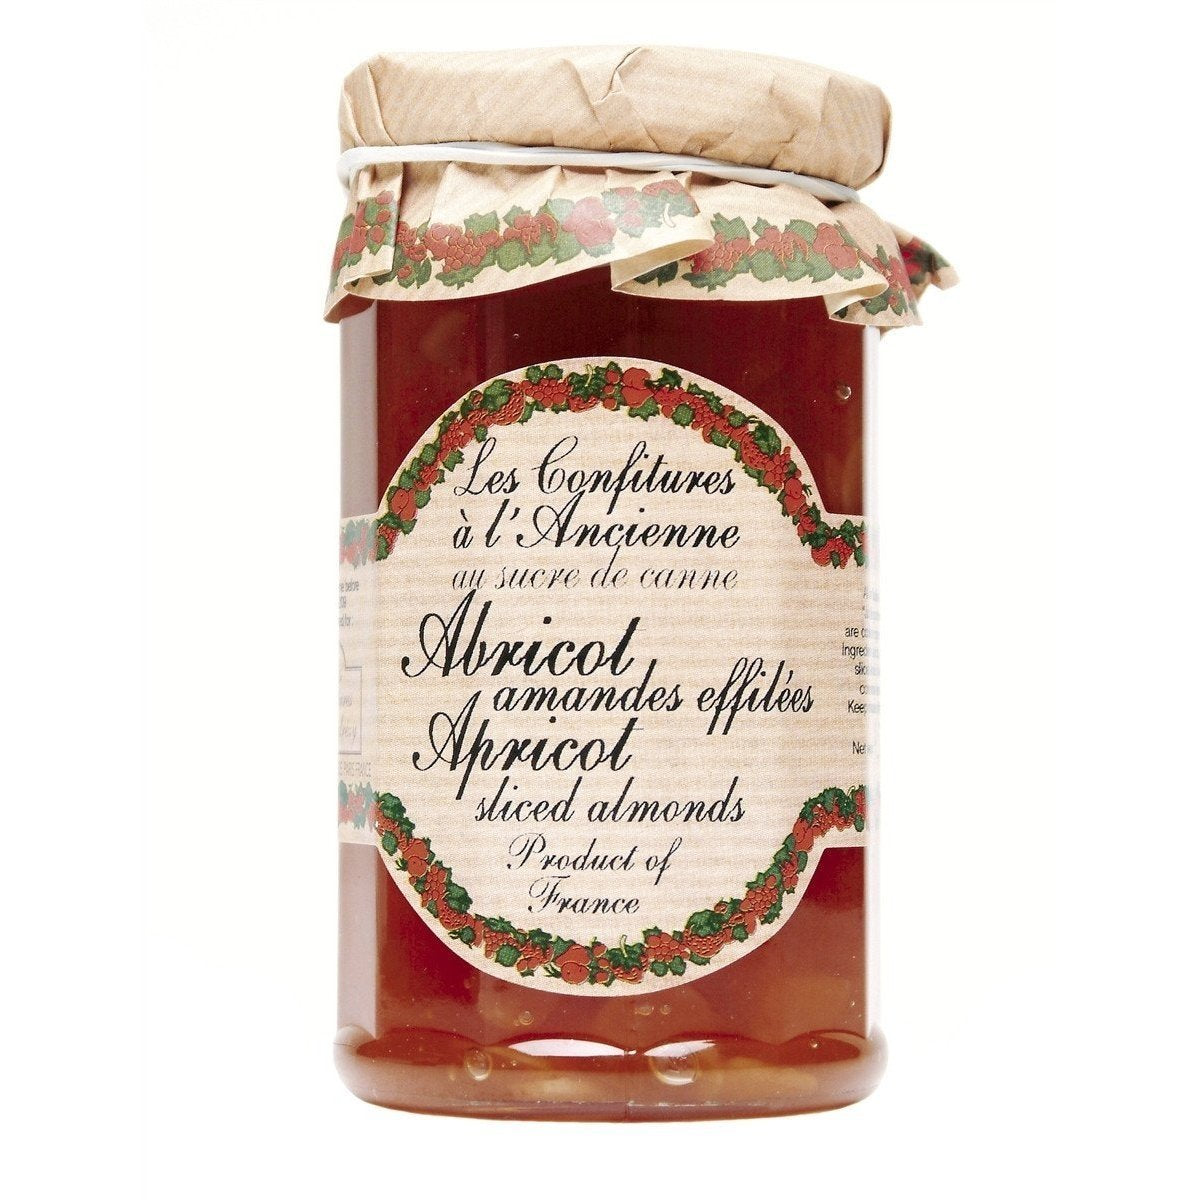 Les Confitures a l'Ancienne Apricot & Sliced Almond Jam 9.52oz